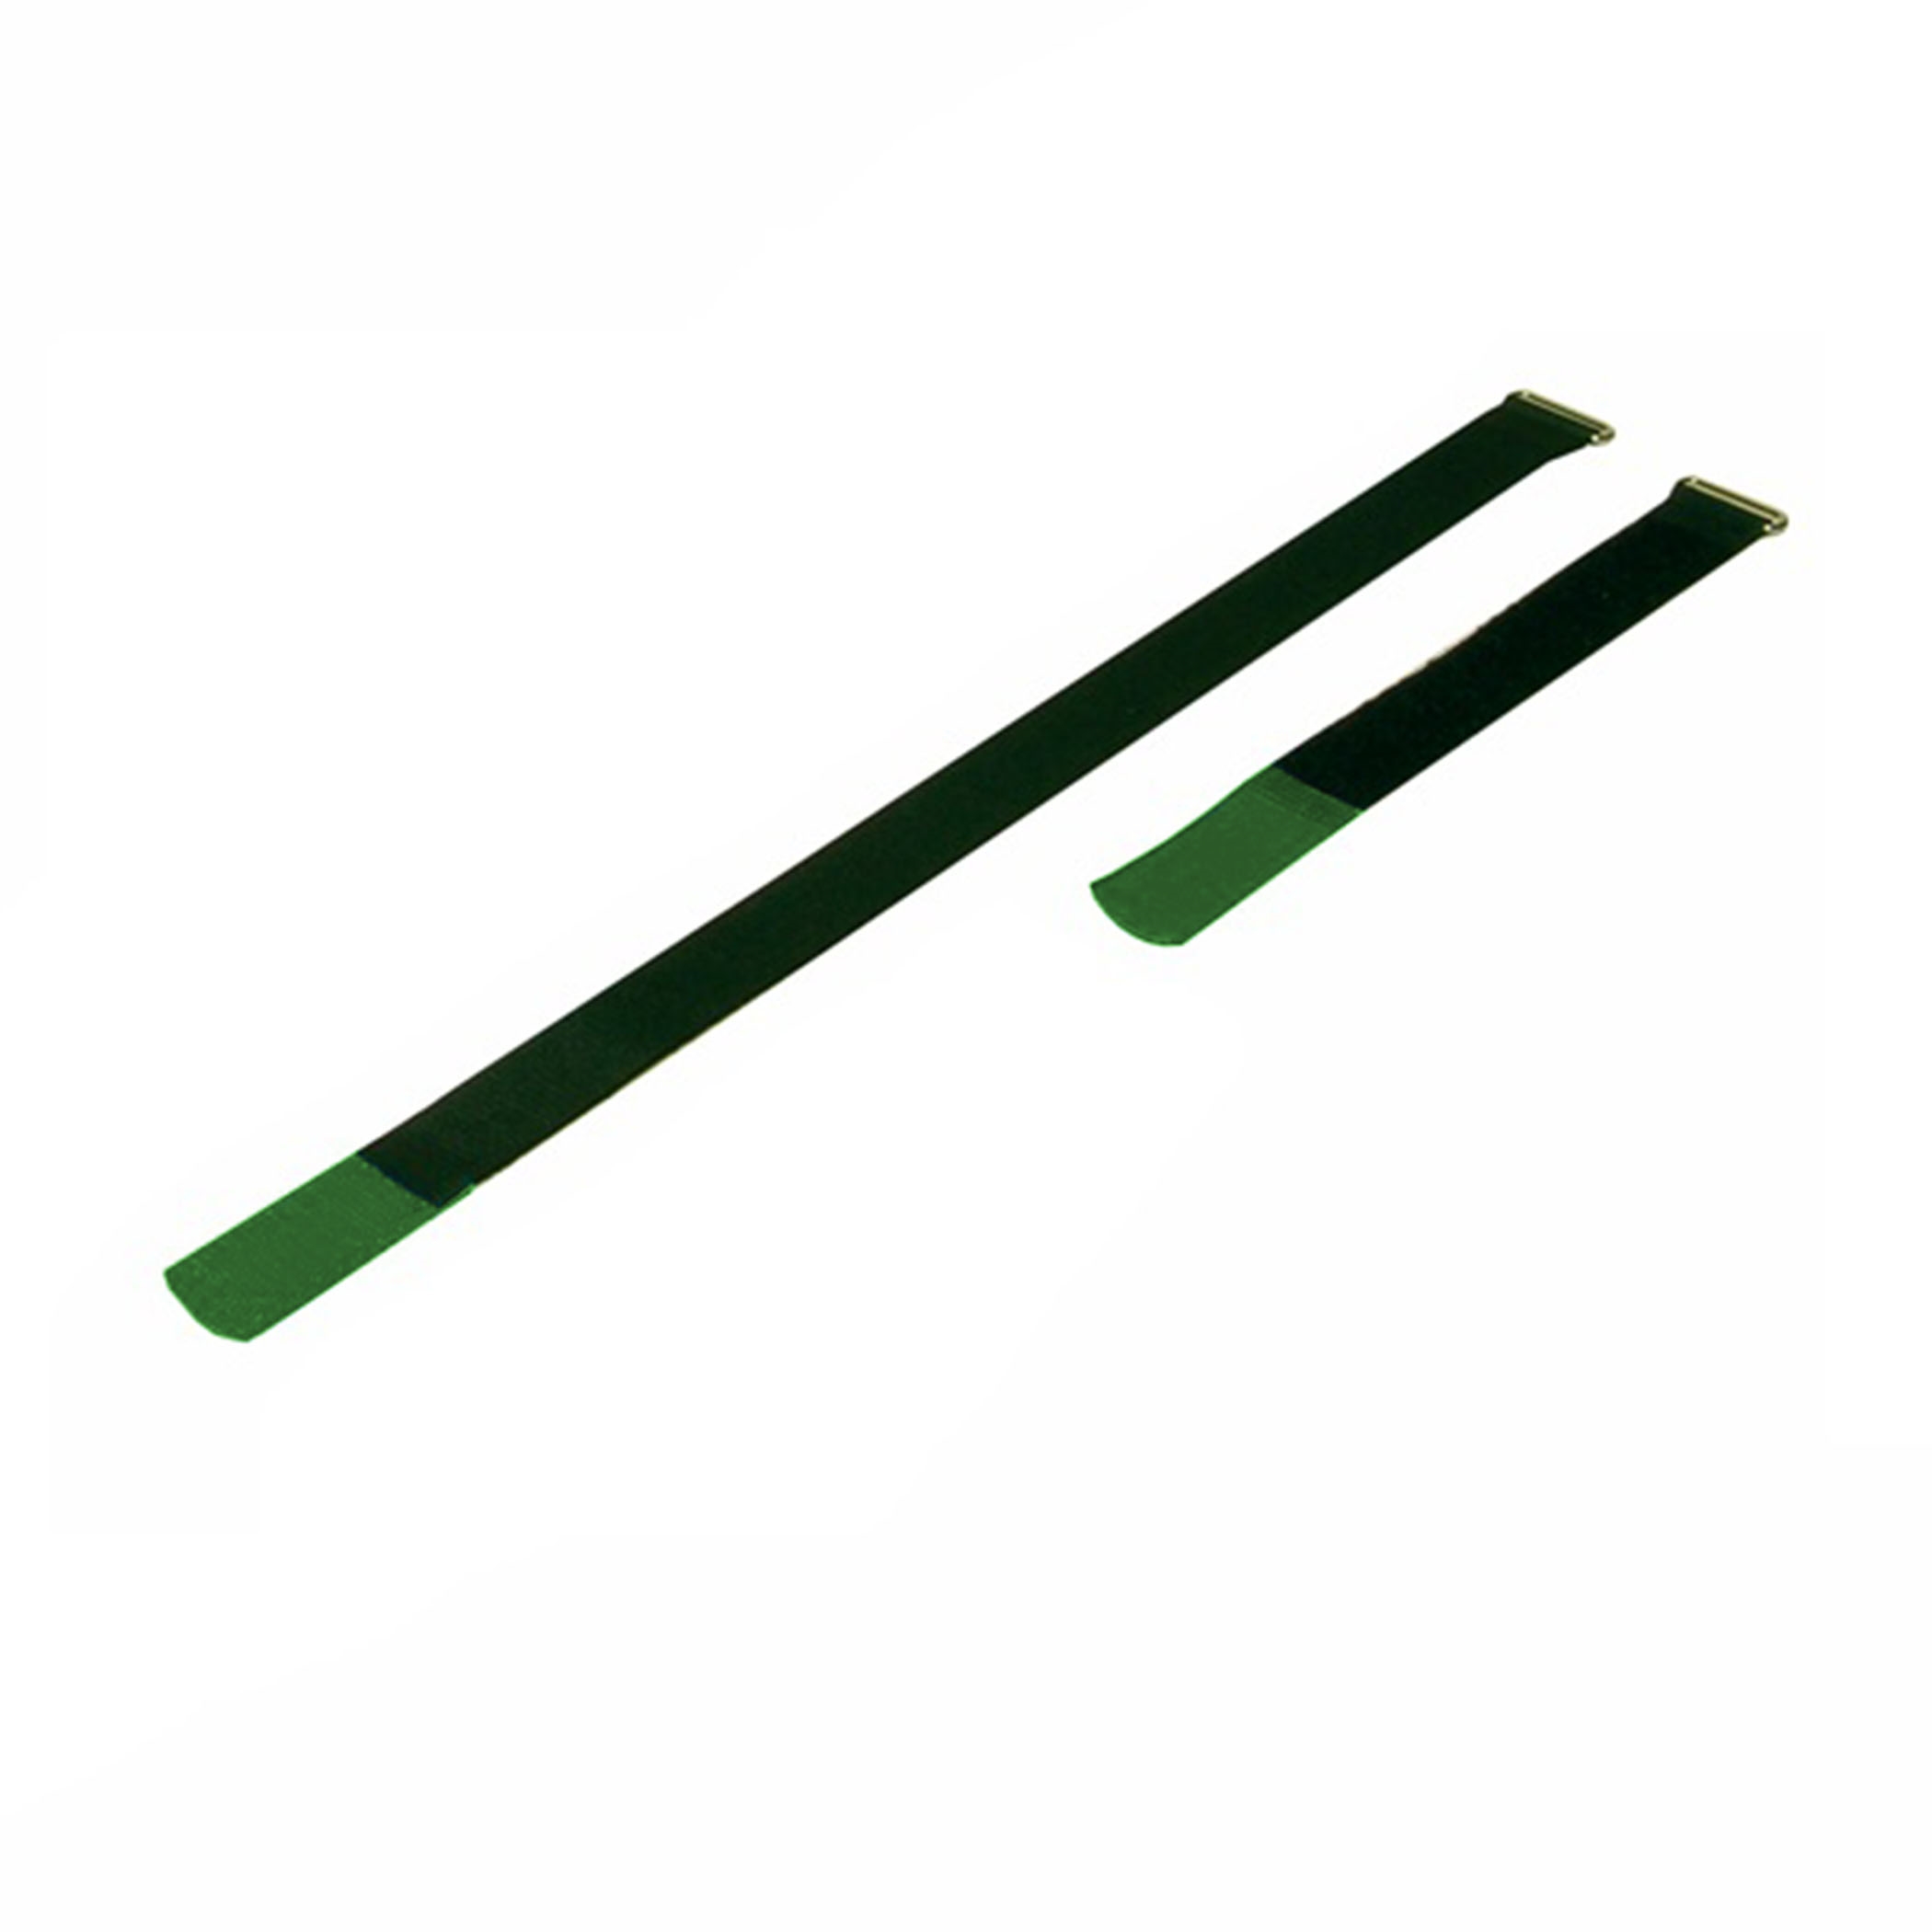 Kabelbinder 170x25mm met haaktip groen, (10 stuks) - a2517-820h